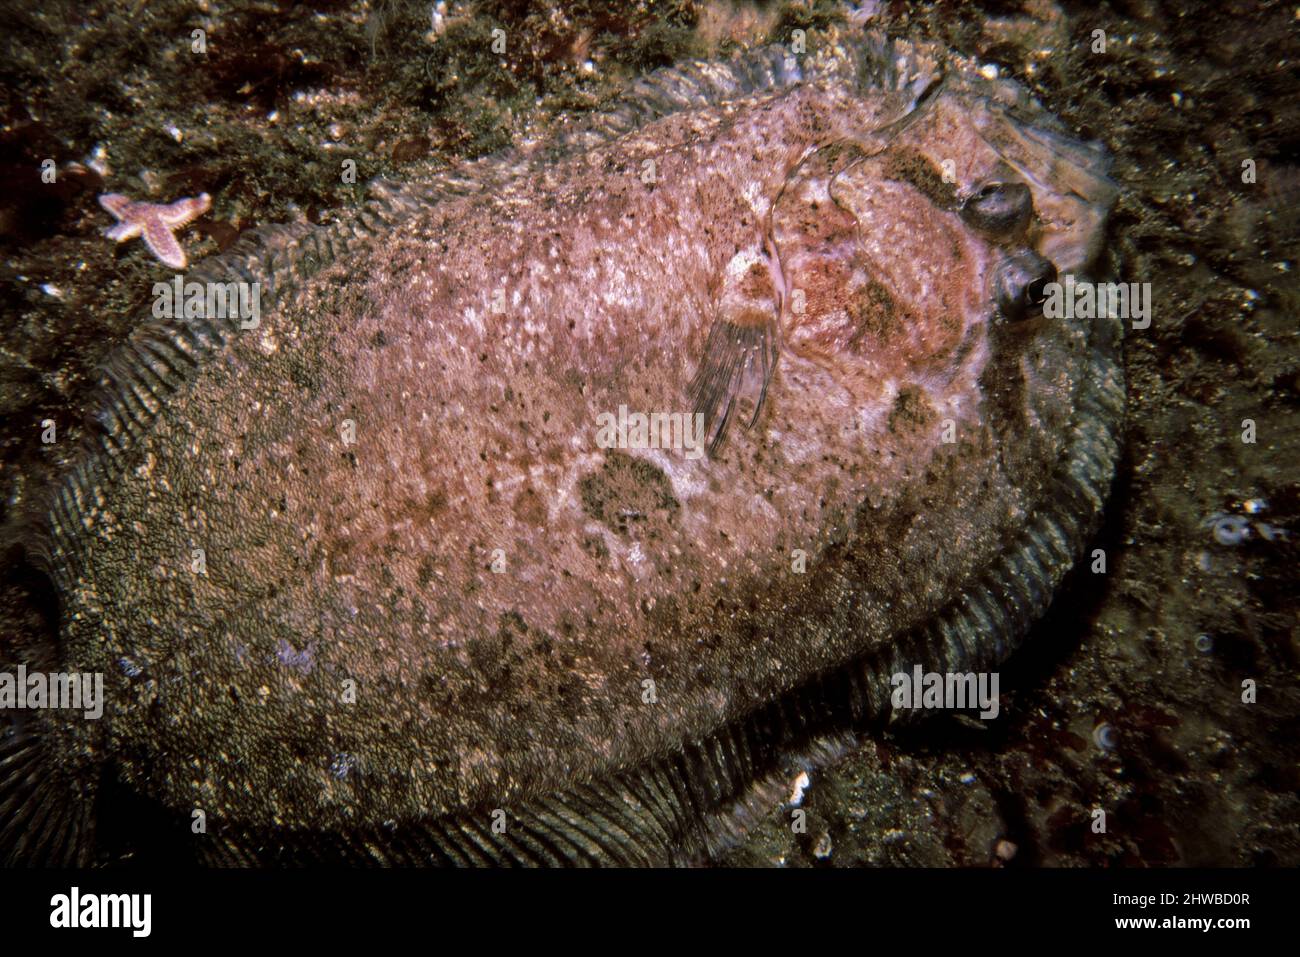 Topknot (Zeugopterus punctatus) on a rock seabed, UK. Stock Photo